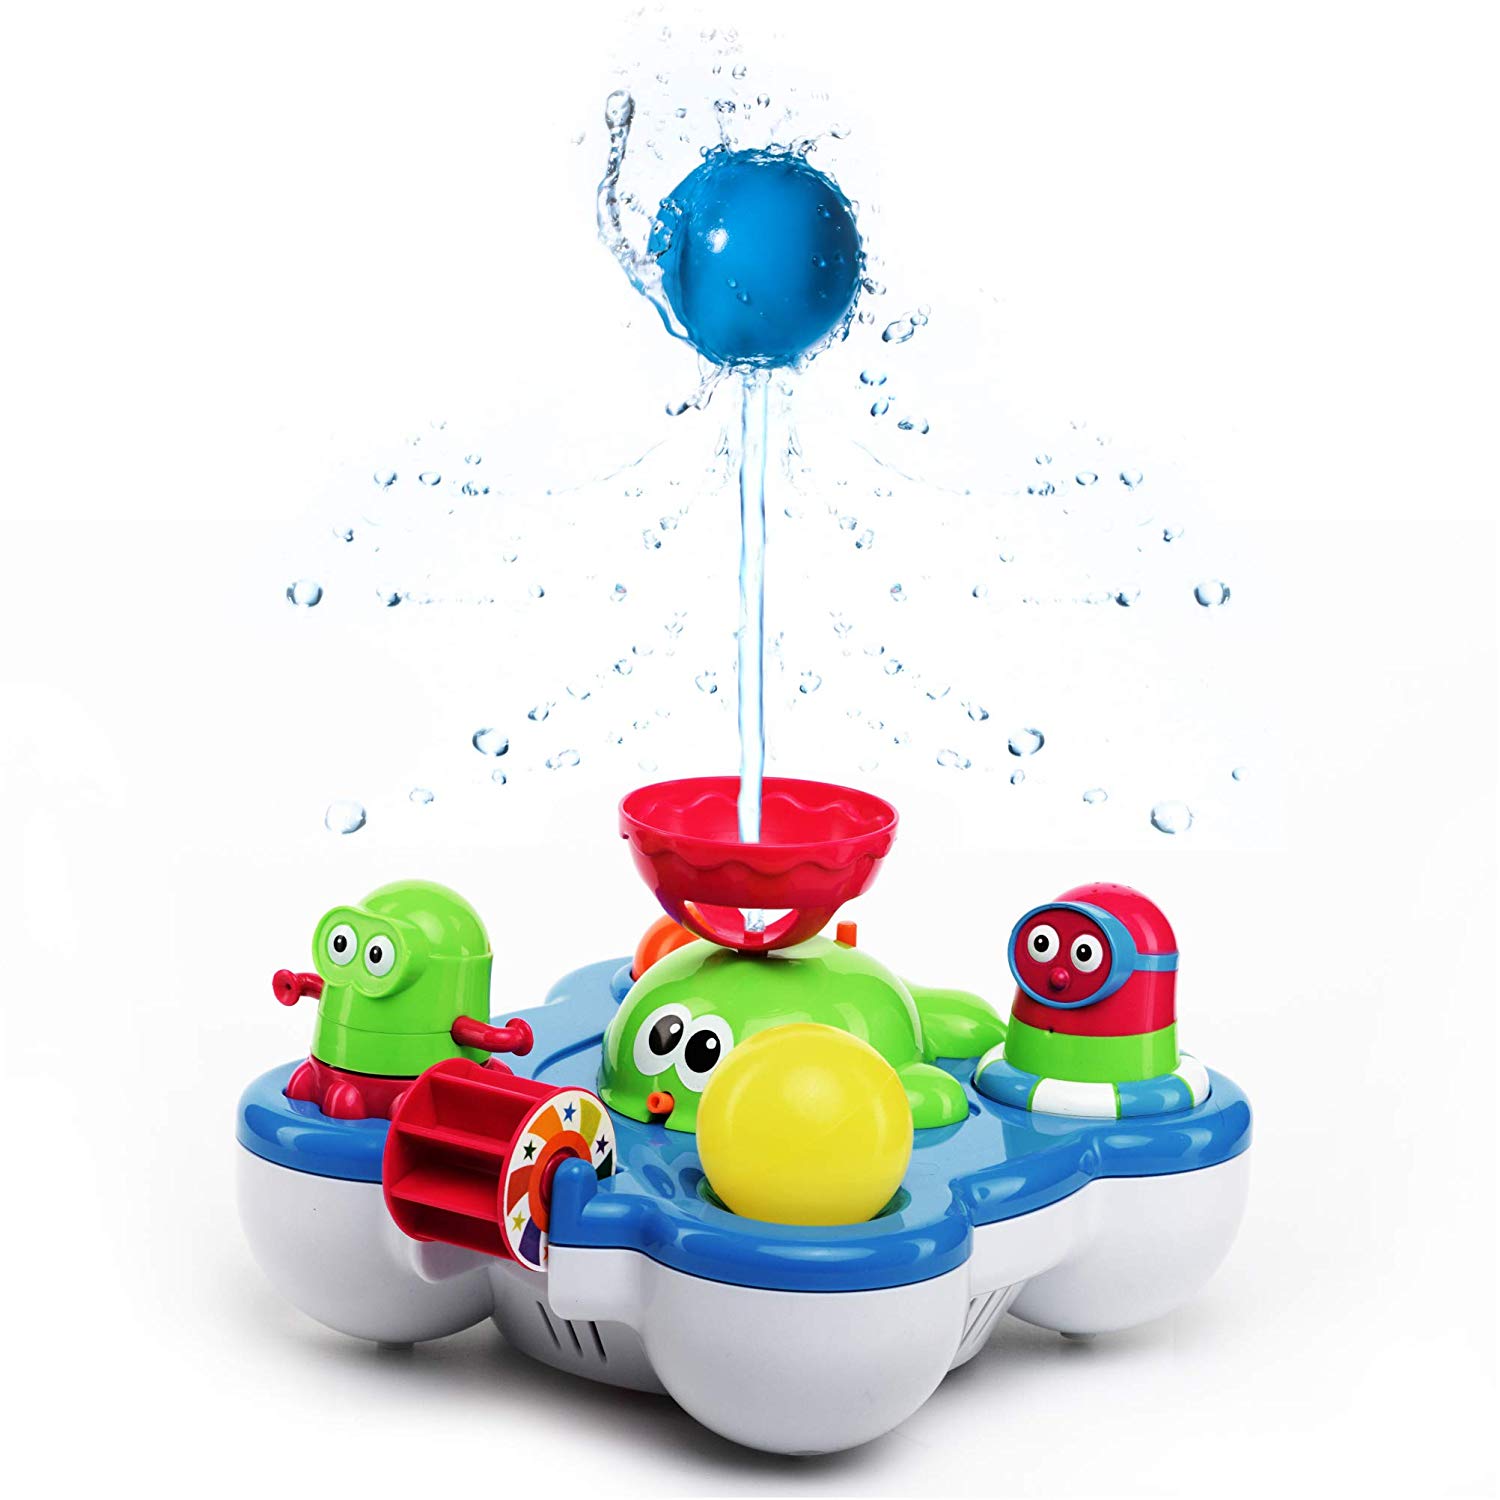 tub toys for infants